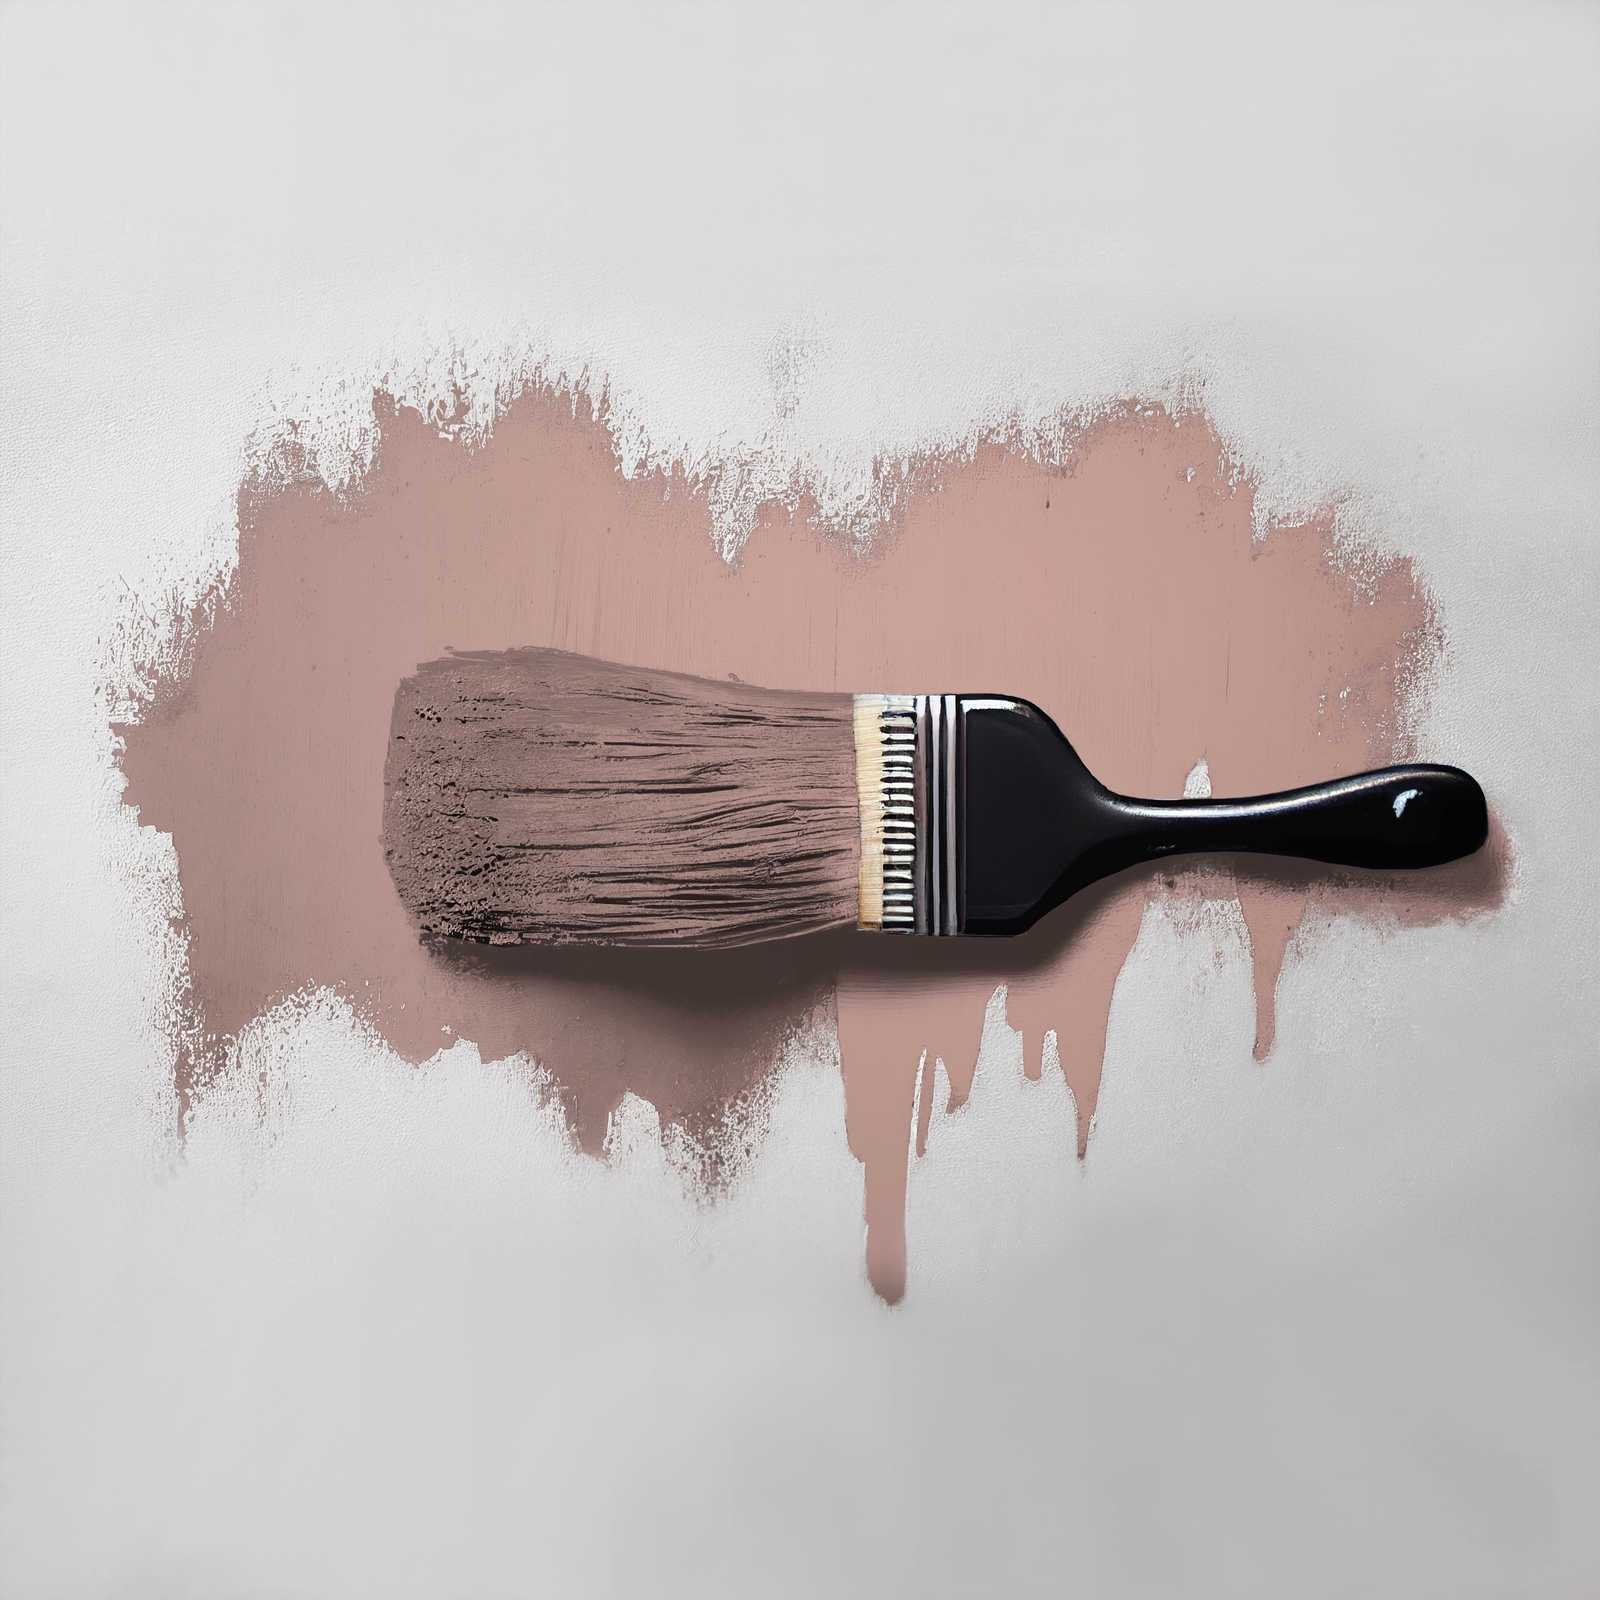             Wandfarbe in rötlichem Beige »Jellied Jostaberry« TCK7002 – 5 Liter
        